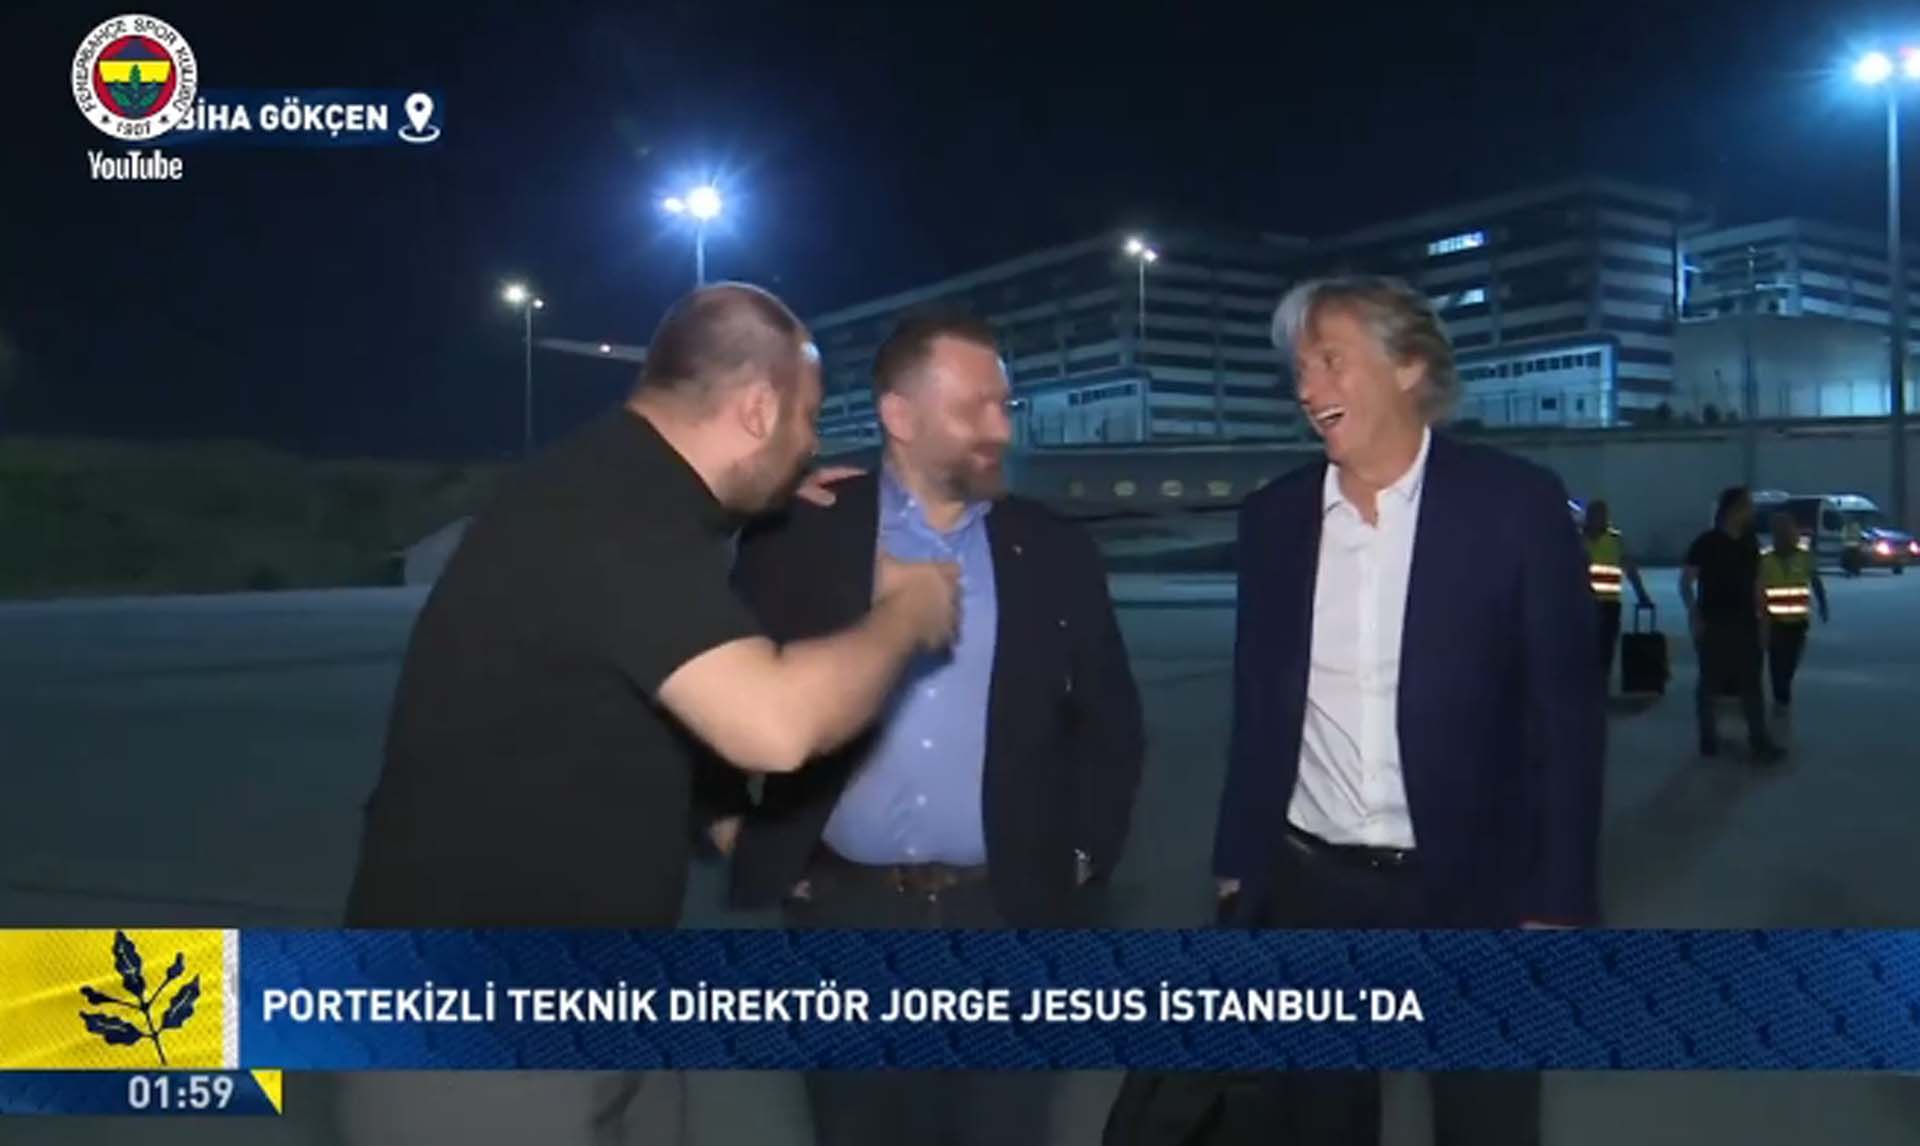 Sarı lacivertlilerin bekleyişi son buldu! Fenerbahçe'nin yeni teknik direktörü Jorge Jesus İstanbul'a geldi